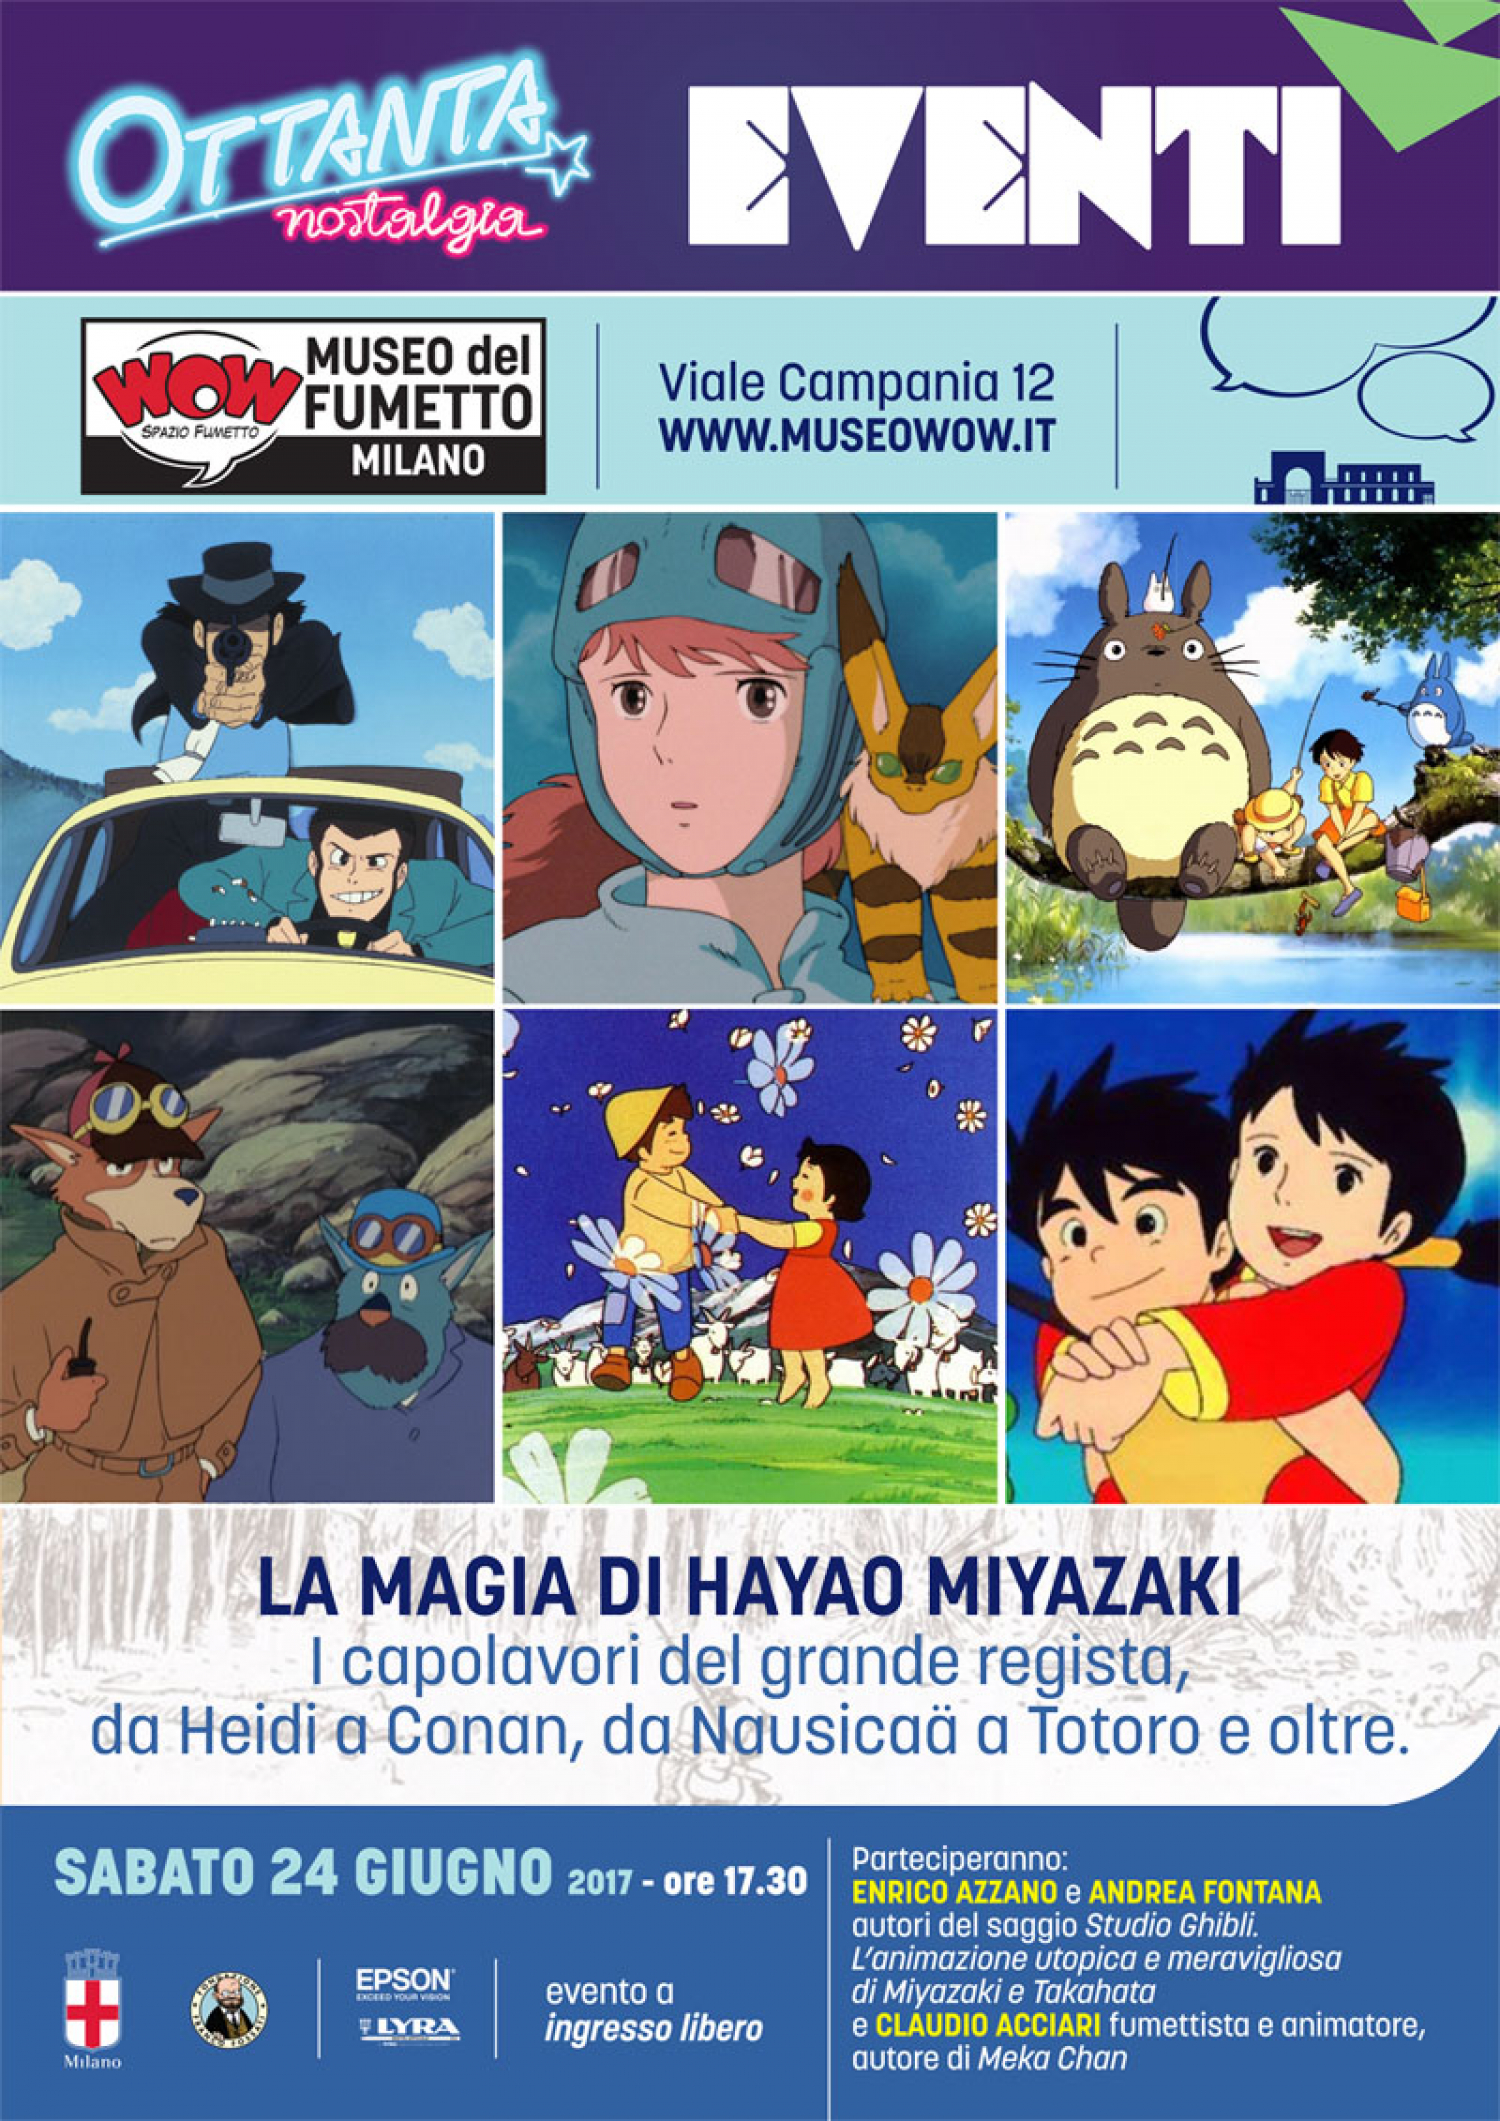 <p><em>Il mio vicino Totoro</em>, <em>La citt&agrave; incantata</em>, <em>La storia della principessa splendente</em> sono alcuni dei film targati <strong>Studio Ghibli</strong> che hanno definitivamente portato l&rsquo;animazione giapponese al successo internazionale. Sinonimo di eccellenza tecnica, lo Studio Ghibli &egrave; artefice di un&rsquo;<strong>idea di cinema incantata e meravigliosa</strong>, grazie alle sue narrazioni struggenti che uniscono arte e botteghino, scrittura e immagine, realizzate con cura maniacale e attenzione a colore, linea, dettagli. I suoi fondatori sono due &ldquo;giganti&rdquo; dell&#39;animazione, <strong>Hayao Miyazaki</strong> e <strong>Isao Takahata</strong>. I due registi e animatori iniziano a influenzare il mondo dell&#39;animazione ben prima di girare i loro successi. Partecipano infatti alla produzione di <em>Heidi</em>, <em>Anna dai capelli rossi</em> e <em>Lupin III</em> a fine anni Settanta, serie che avranno un enorme successo in Italia negli <strong>anni Ottanta</strong>, quando arrivano da noi insieme alla prima opera personale di Miyazaki, la serie <em>Conan il ragazzo del futuro</em>, in cui sono gi&agrave; presenti tutti gli aspetti principali della sua poetica, come l&#39;ecologia, l&#39;avversione per la tecnologia e il fascino per le civilt&agrave; perdute e misteriose. Nel 1982 il regista collabora poi con lo Studio Pagot per la serie<em> Il fiuto di Sherlock Holmes</em>, coprodotta dalla Rai, esperienza durante la quale nascer&agrave; l&#39;amicizia con <strong>Marco Pagot</strong>, che omagger&agrave; dando il suo nome al protagonista di <em>Porco Rosso</em>. Il 1984 &egrave; l&#39;anno di <em>Nausica&auml; della Valle del vento</em>, lungometraggio diretto da Miyazaki e prodotto da Takahata, primo tassello di quello che negli anni seguenti diventer&agrave; lo <strong>Studio Ghibli</strong>, luogo di nascita di capolavori come <em>Laputa &ndash; Castello nel cielo</em> (1986), <em>Il mio vicino Totoro</em> (1988), <em>Una tomba per le lucciole</em> (1988) e molti altri. <strong>Sabato 24 giugno alle ore 17.30</strong>&nbsp;in occasione della mostra <a target="_blank" href="http://www.museowow.it/wow/it/anni-ottanta-in-mostra/">Ottanta Nostalgia</a> gli esperti di cinema d&#39;animazione <strong>Enrico Azzano</strong> e <a target="_blank" href="http://www.fumettologica.it/author/andra-fontana/"><strong>Andrea Fontana</strong></a> racconteranno proprio questa storia, che noi in Italia abbiamo iniziato a scoprire negli anni Ottanta. I due sono gli autori del saggio <em>Studio Ghibli. L&#39;animazione utopica e meravigliosa di Miyazaki e Takahata</em> (Bietti), volume che raccoglie l&rsquo;<strong>intera storia dello Studio</strong>, dalle celebrate pellicole dei due fondatori agli esordi dei possibili eredi, con il contributo di alcuni dei pi&ugrave; importanti fumettisti, artisti e critici italiani. A dialogare con loro dell&#39;importanza dell&#39;opera di Miyazaki e Takahata per l&#39;immaginario dei trenta/quarantenni italiani ci sar&agrave; <a target="_blank" href="http://claudioacciari.blogspot.it/"><strong>Claudio Acciari</strong></a>, autore di <em>Meka Chan</em> (Bao Publishing), fumetto ispirato alle serie di robottoni giapponesi, e grande appassionato dei film dello Studio Ghibli.</p>